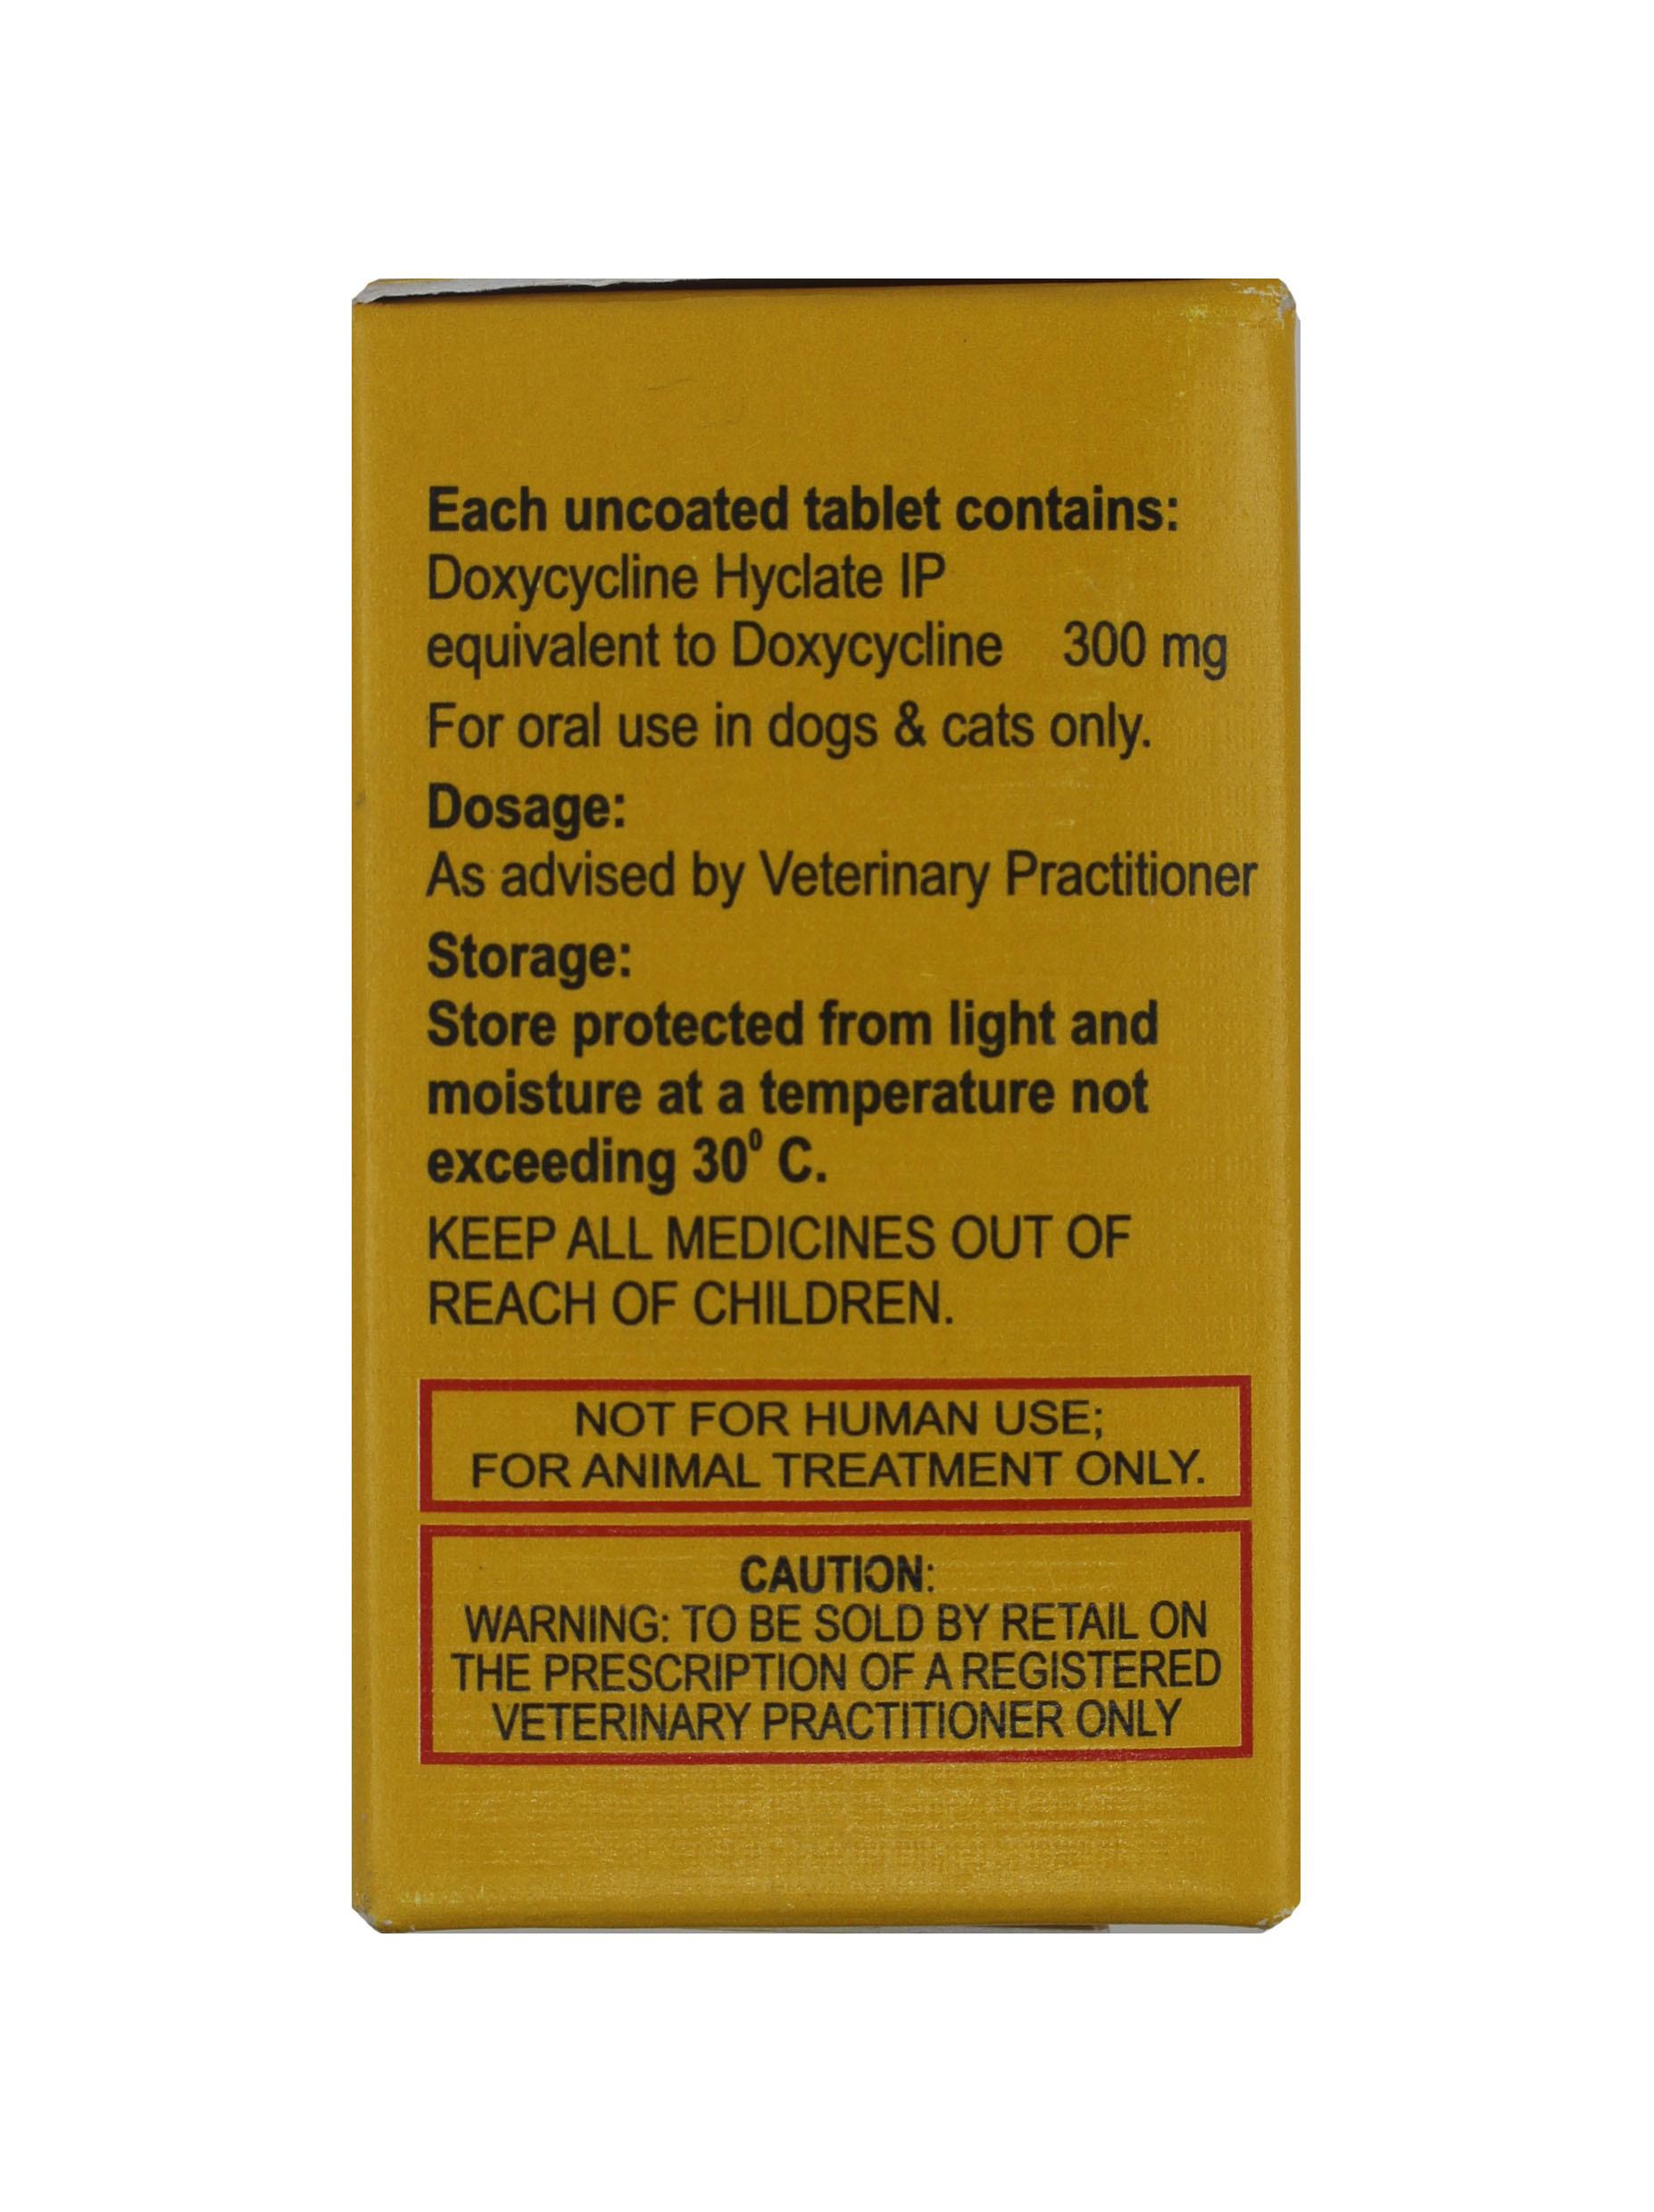 Dr Doxy 300mg-doxycycline Hyclate